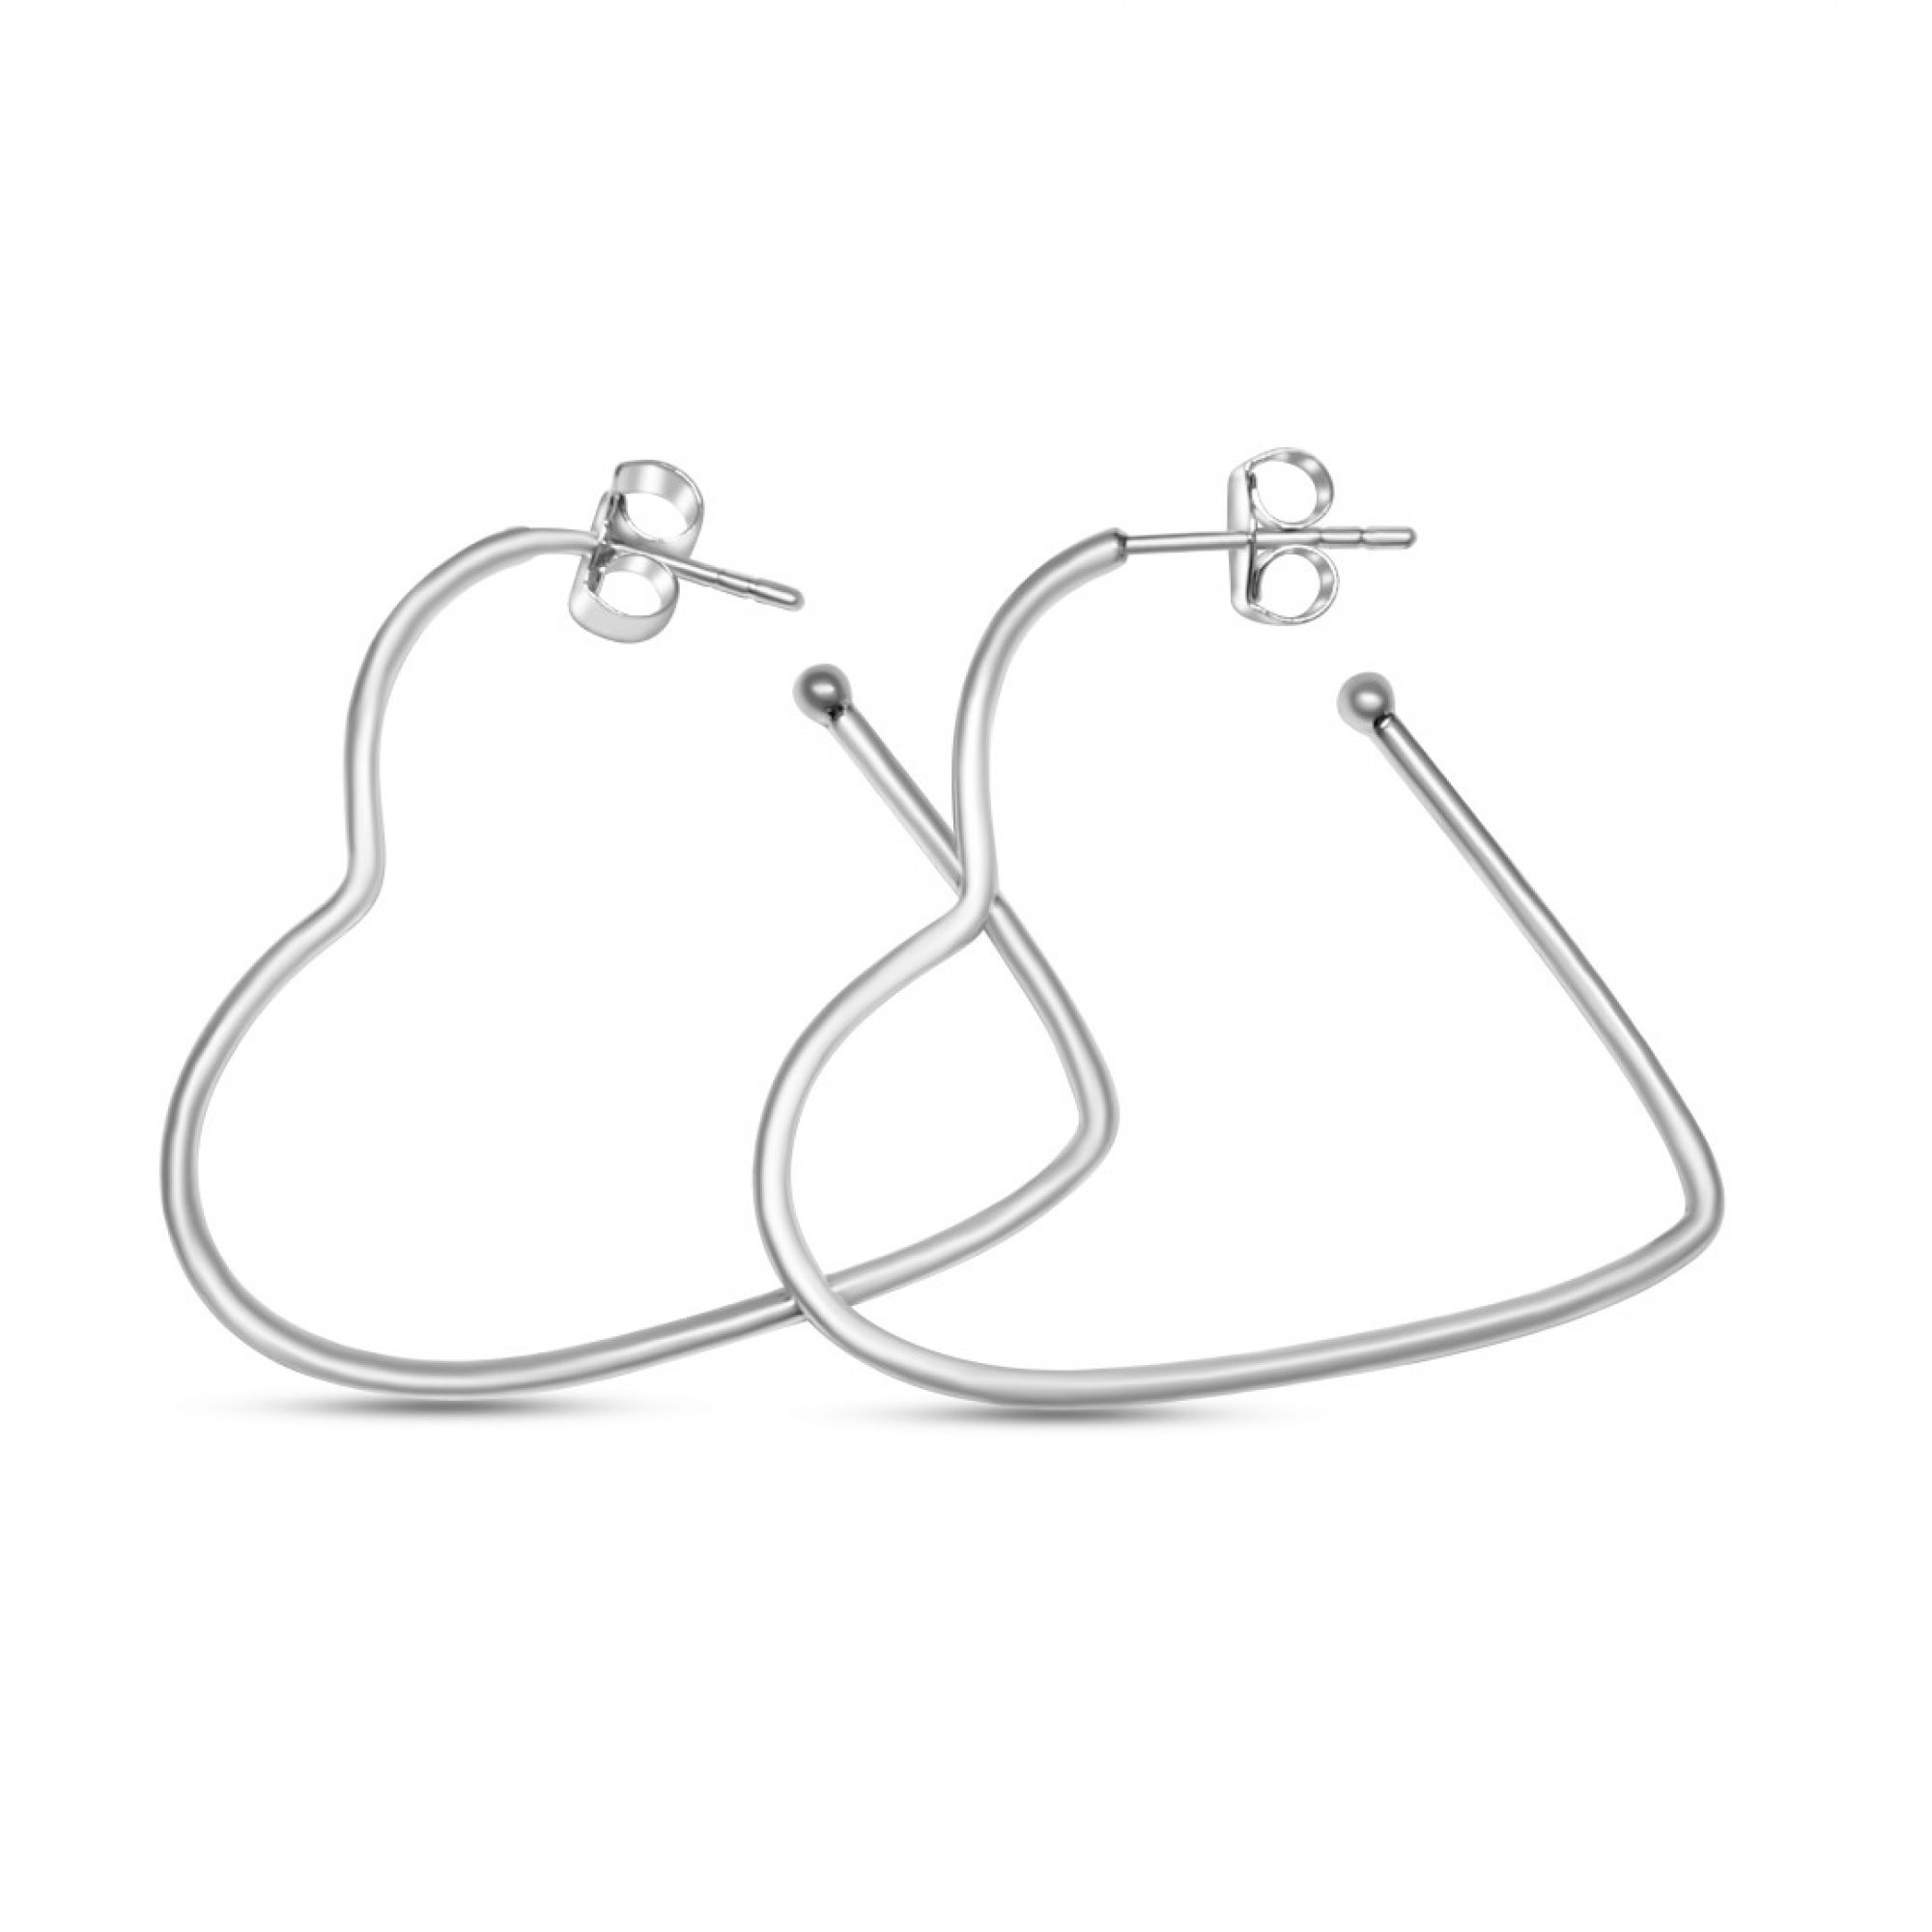 Heart shaped silver hoops